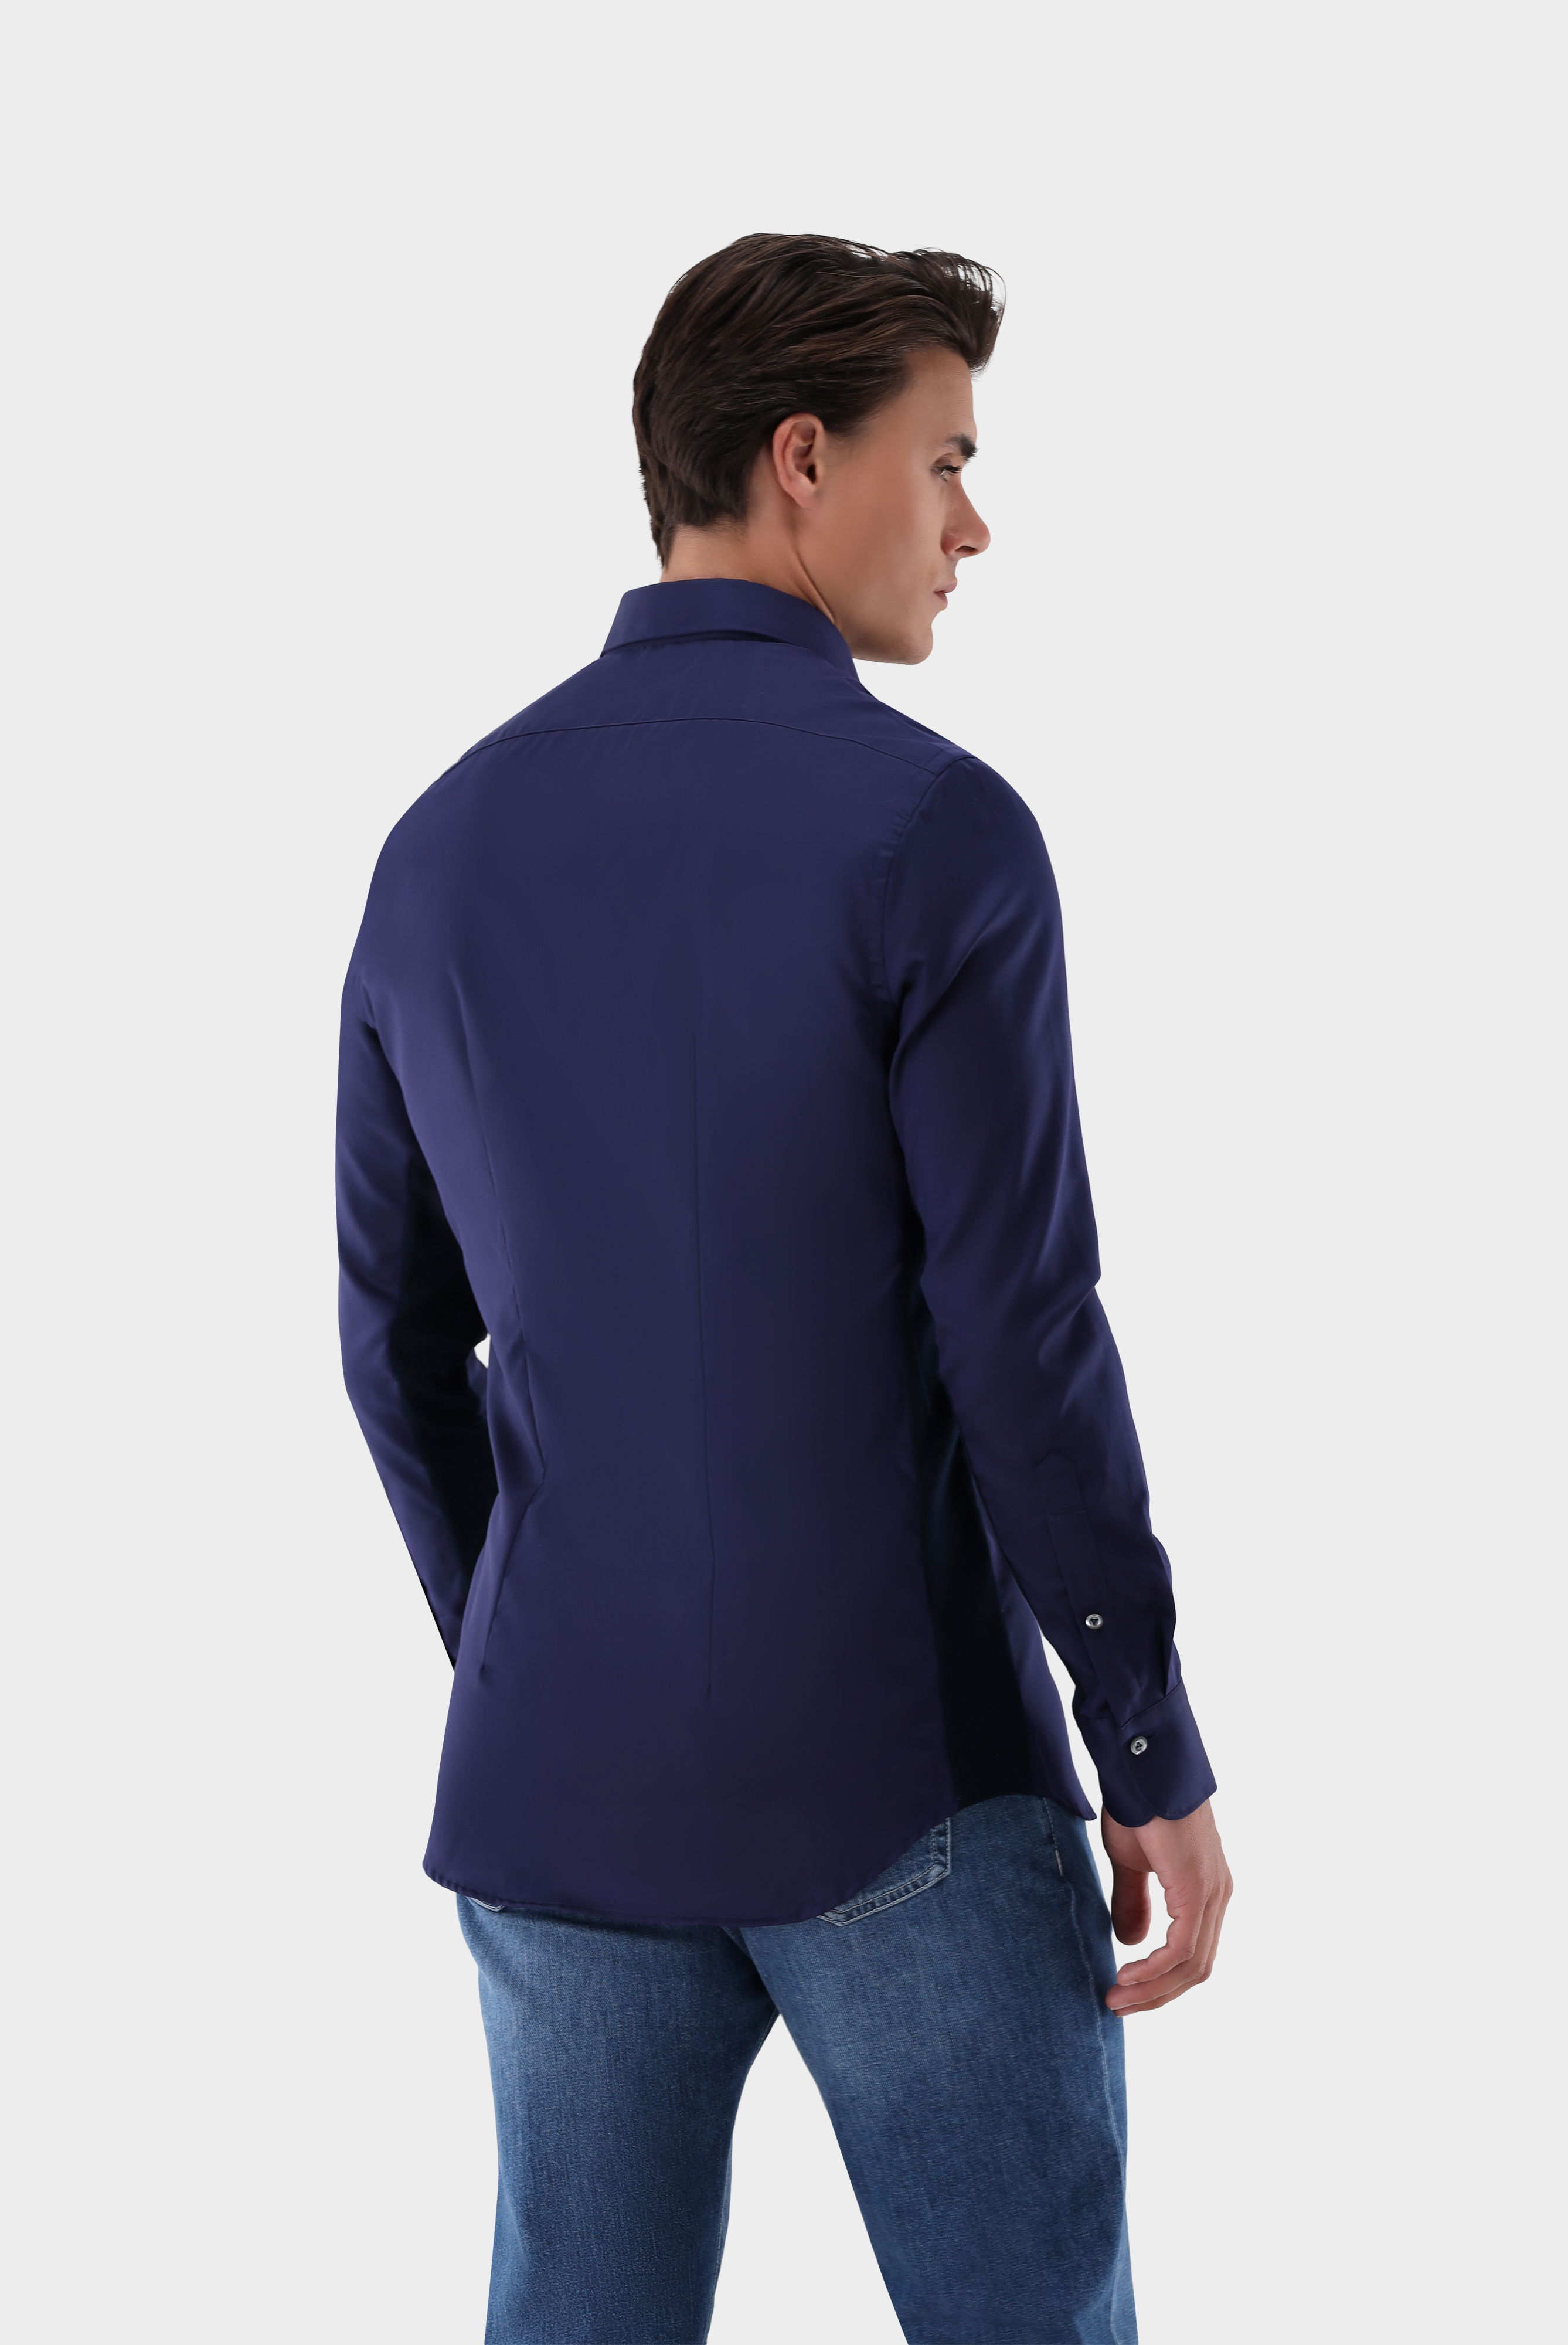 Bügelleichte Hemden+Bügelfreies Hybridshirt mit Jerseyeinsatz Slim Fit+20.2553.0F.132241.790.40